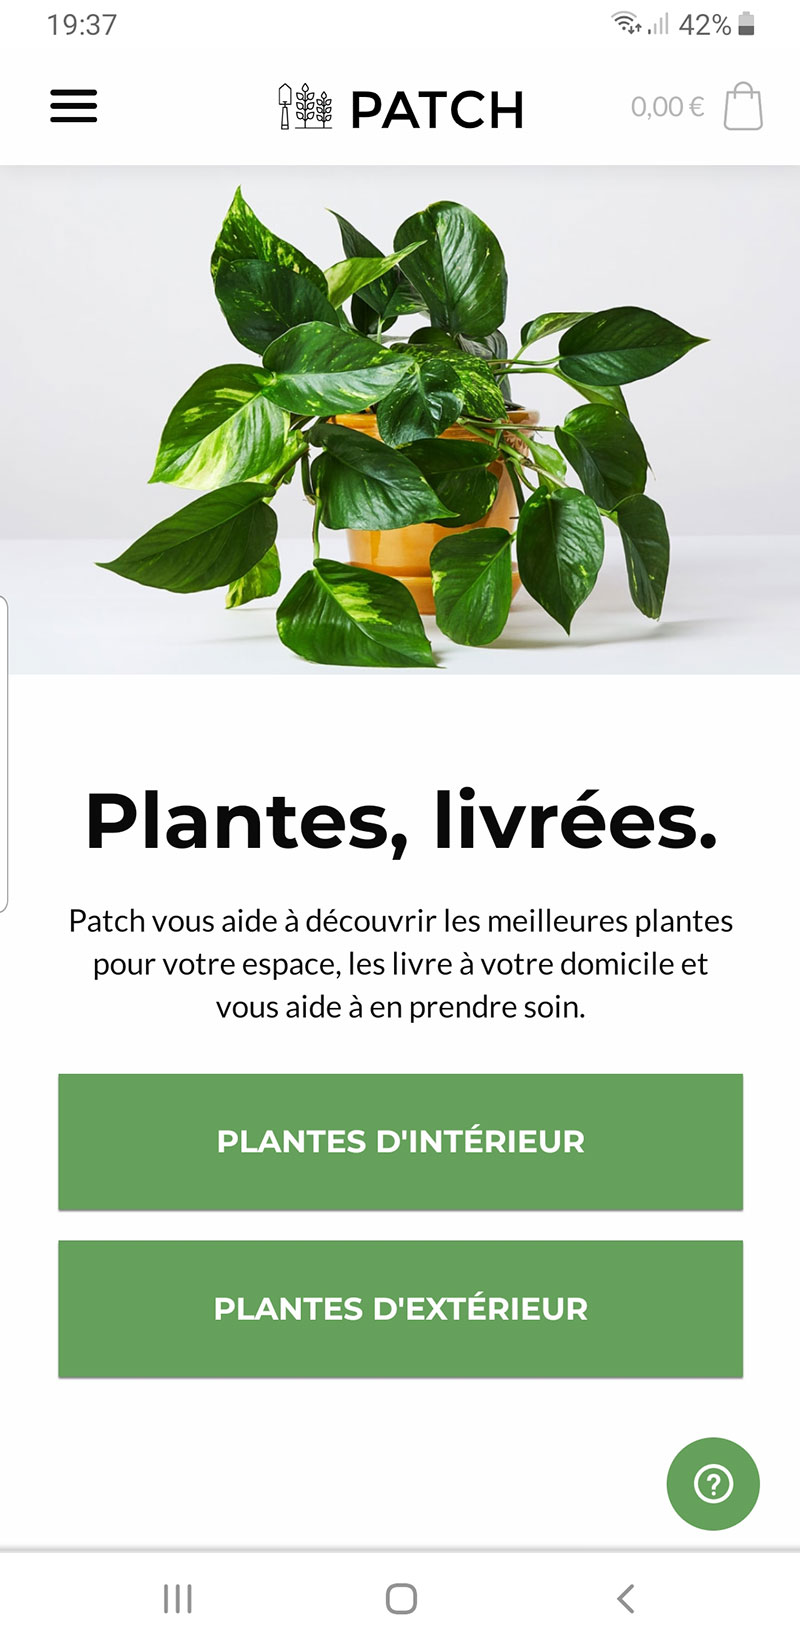 PATCH-livraison-plantes-09